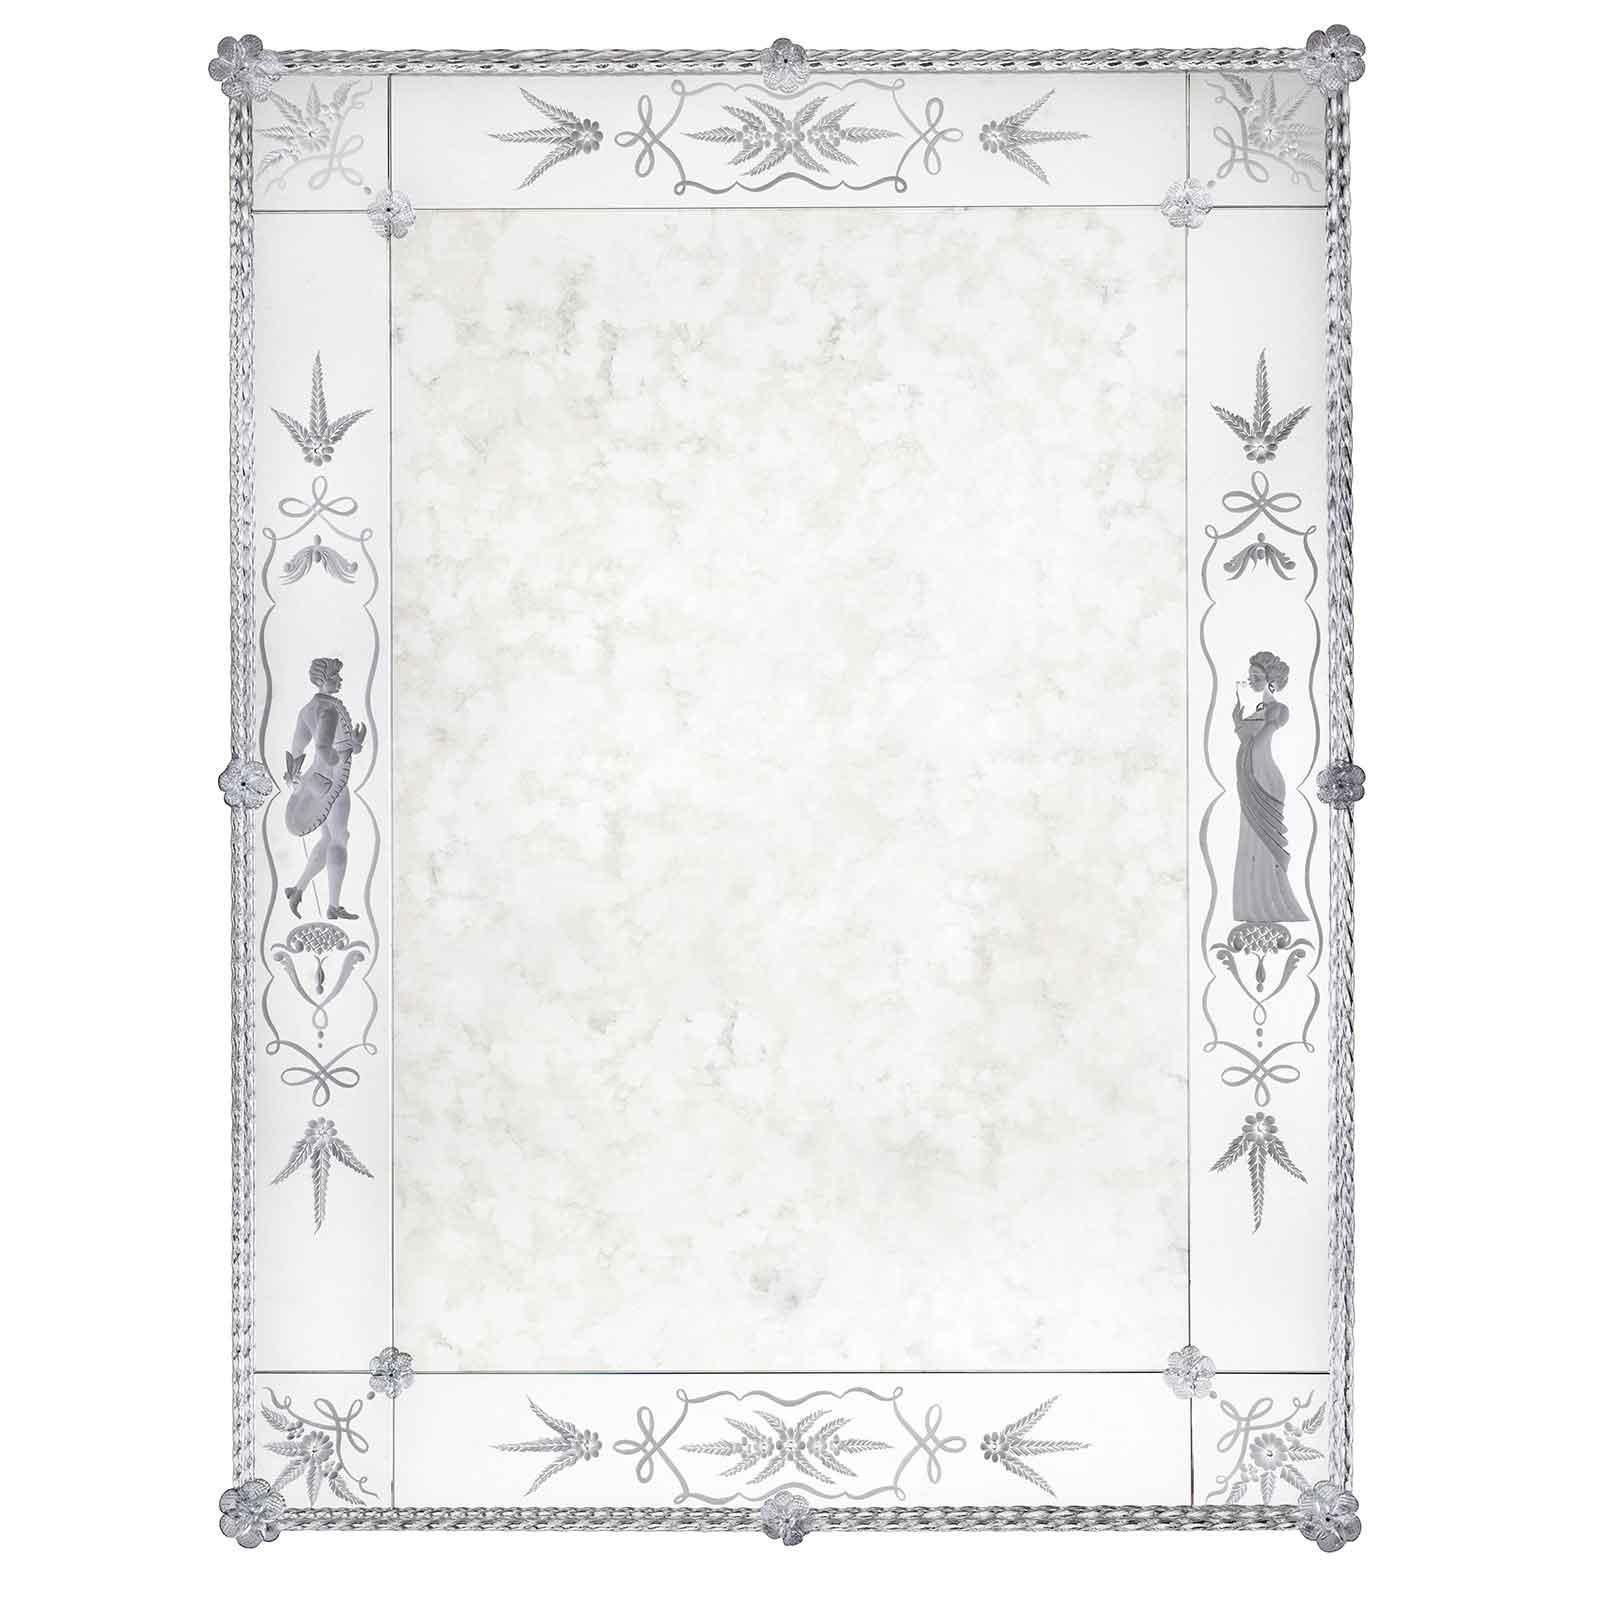 Specchio veneziano artigianale Costa, con incisione fatta a mano di dama e cavaliere ed elementi decorativi sulle fasce laterali, canne e fiori in vetro di murano di colore cristallo su fondo argento